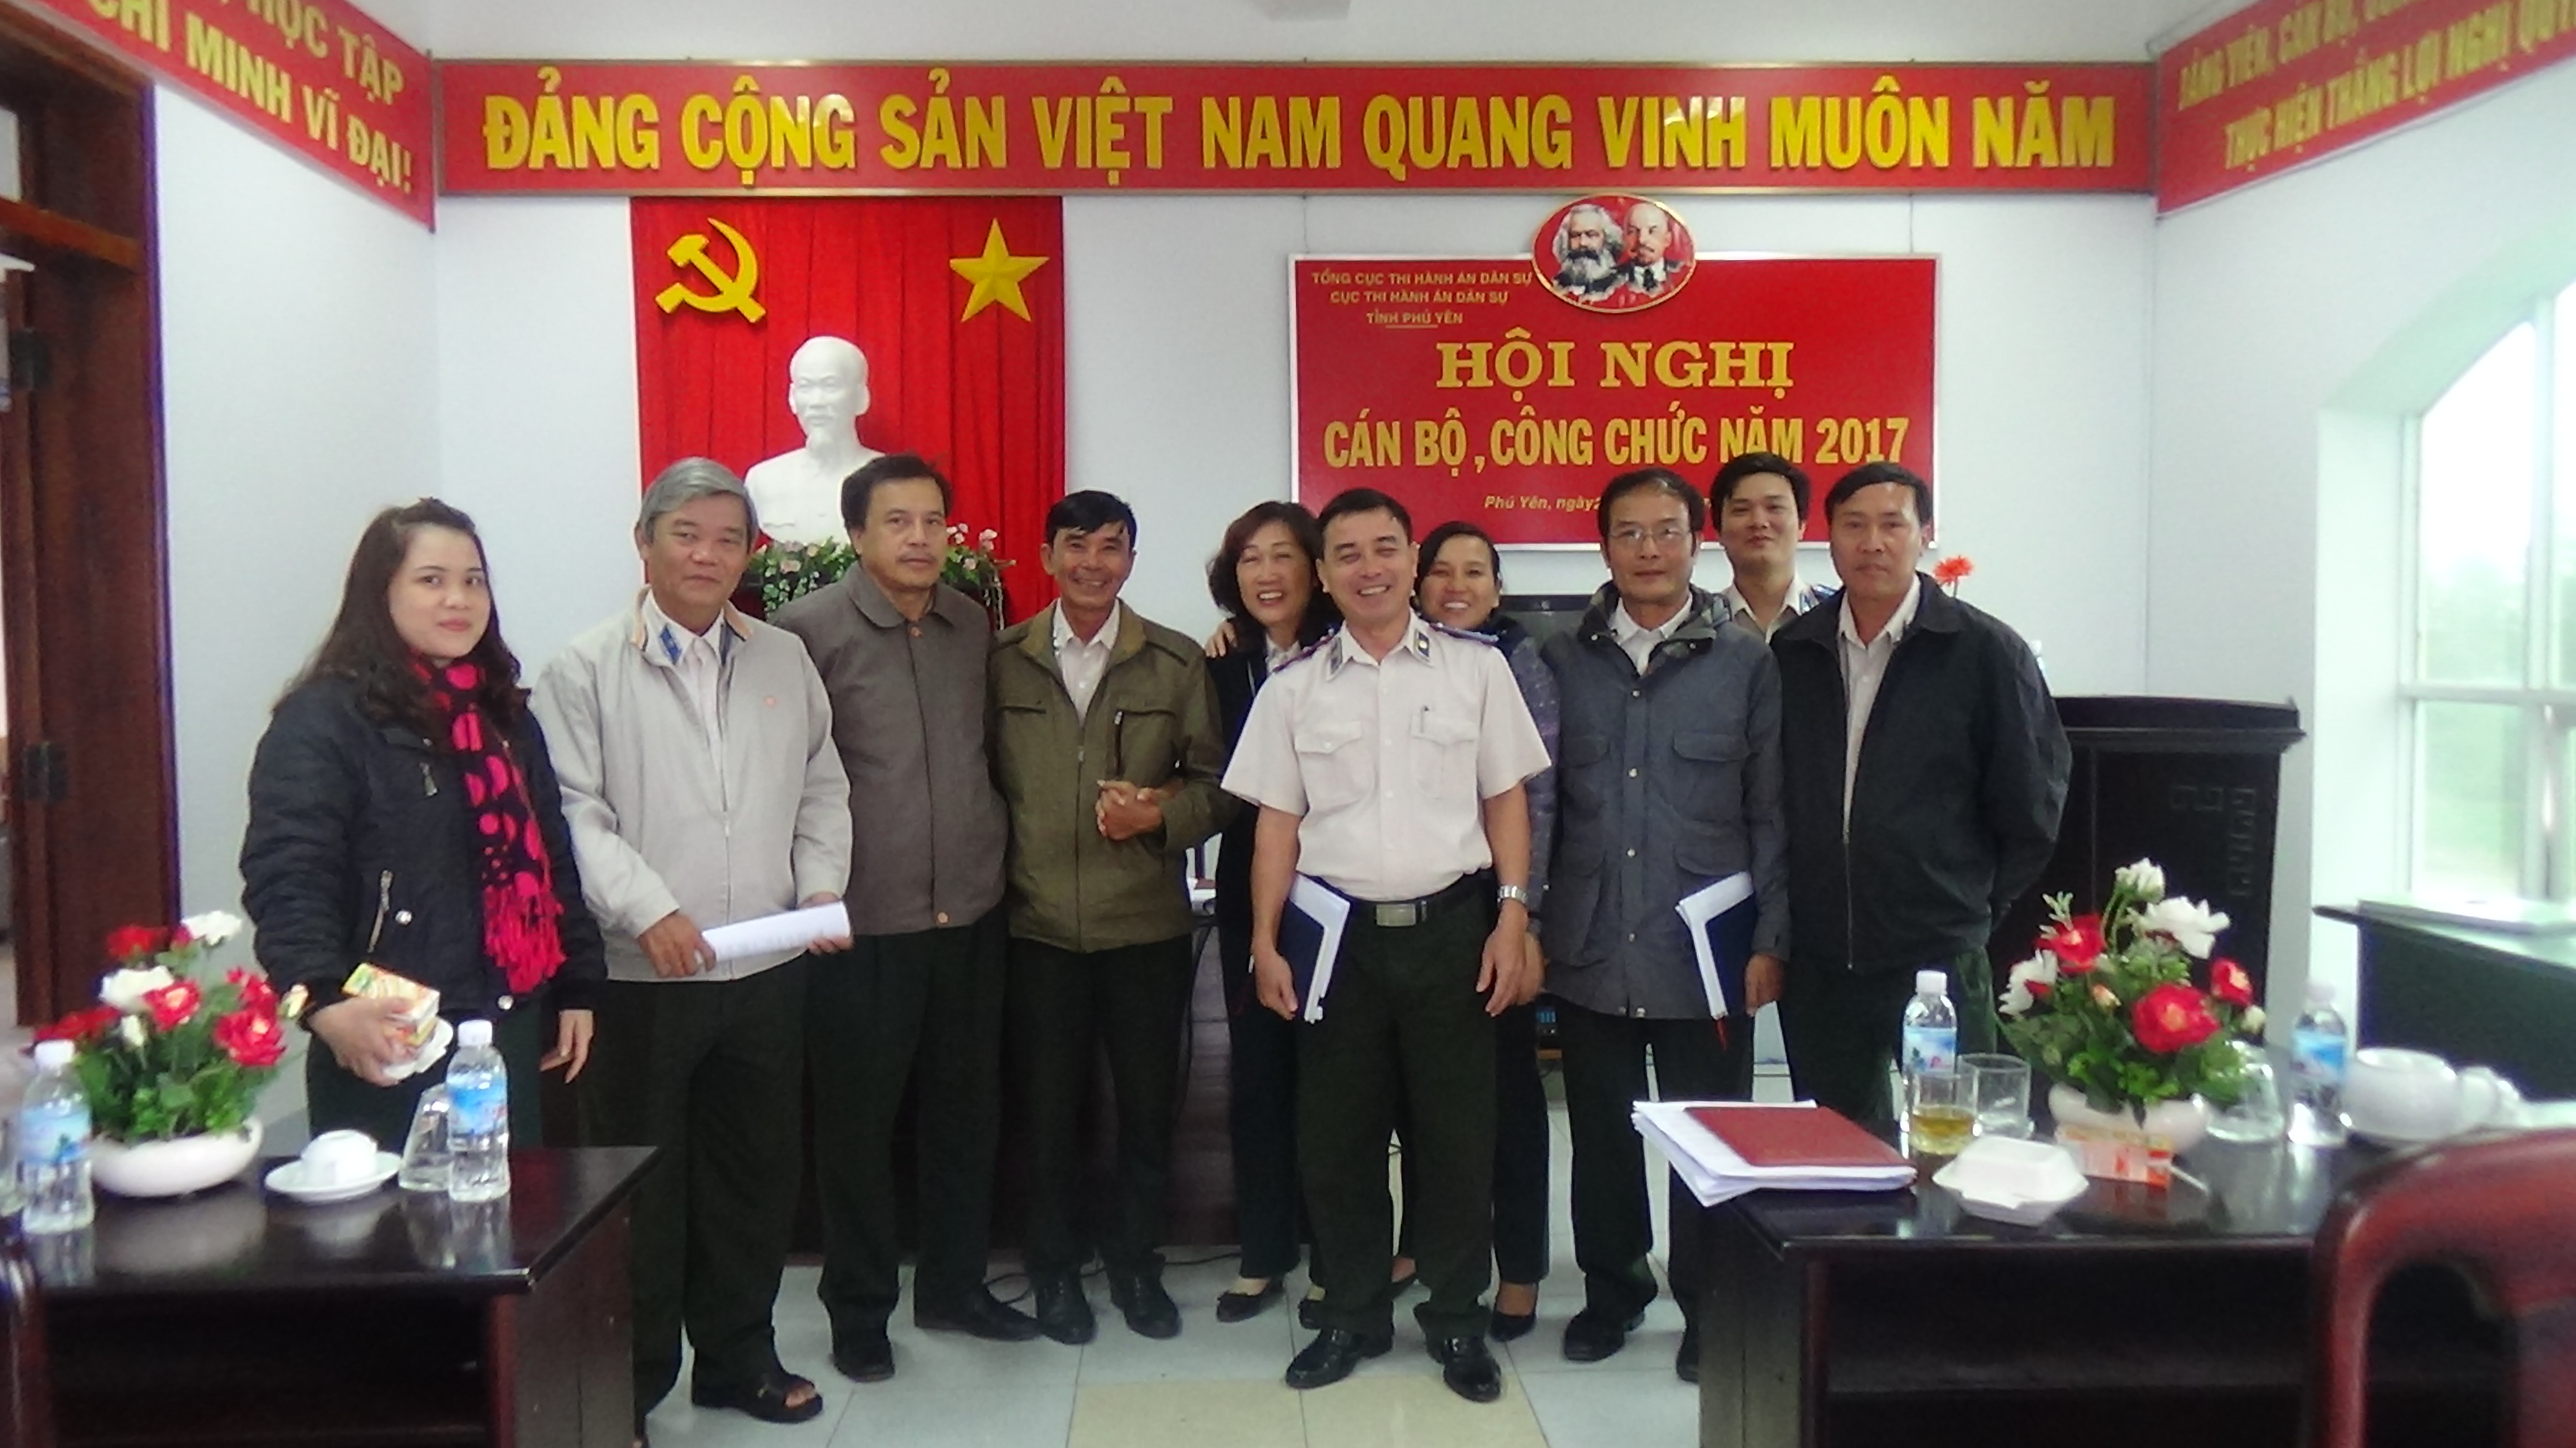 Phú Yên: Cục THADS tổ chức Hội nghị cán bộ, công chức năm 2017